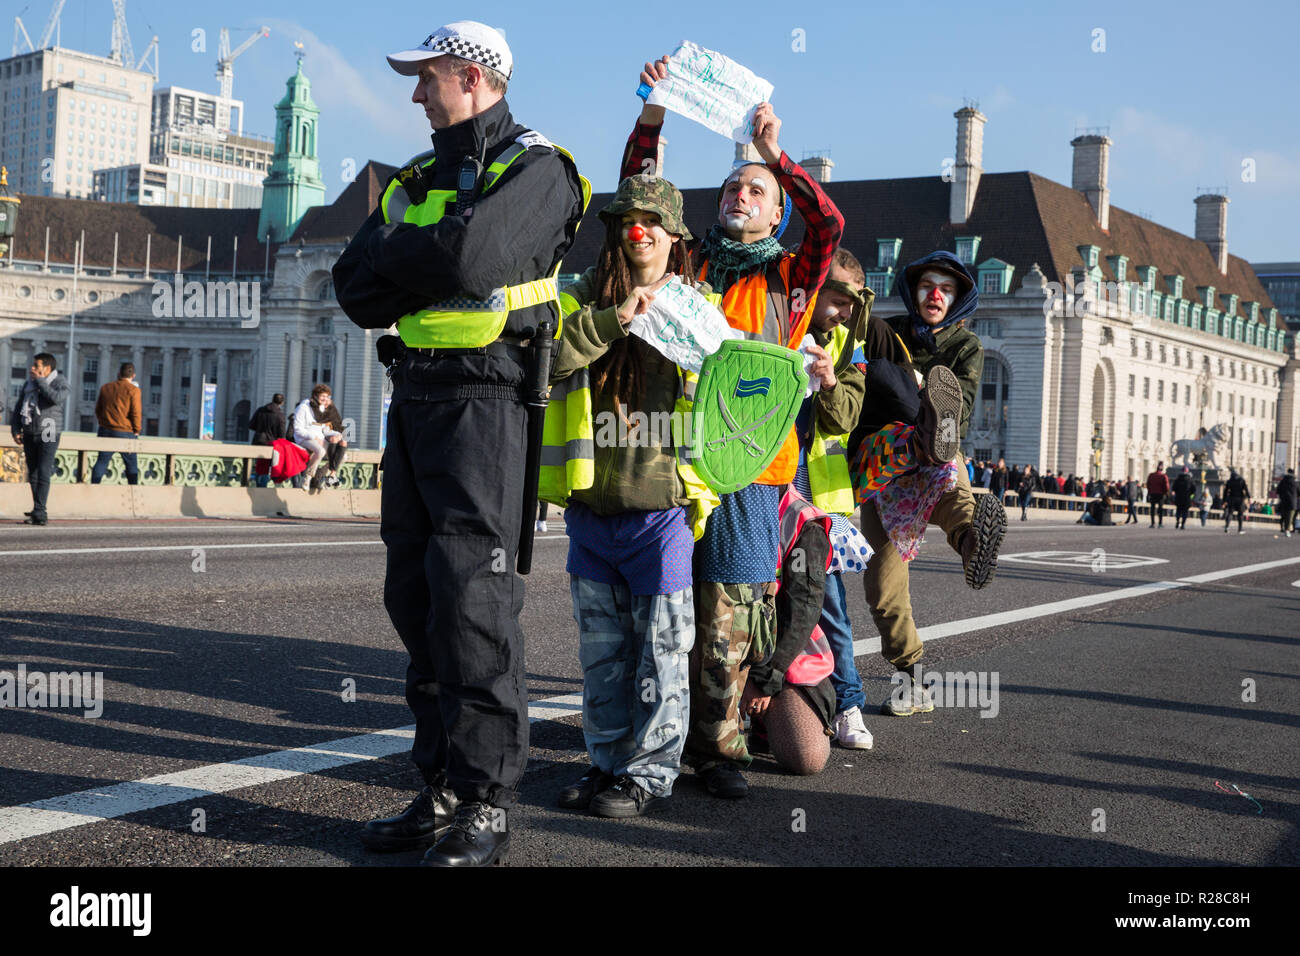 Londres, Royaume-Uni. 17 novembre, 2018. De Clowns rebelles insurgés de l'armée clandestine de clown (CIRCA) soutenir la rébellion Extinction de bloquer le pont de Westminster, l'un des cinq ponts bloqués dans le centre de Londres, dans le cadre d'un événement pour souligner la Journée de la rébellion criminelle "l'inaction face au changement climatique et catastrophe catastrophe écologique" par le gouvernement britannique dans le cadre d'un programme de désobéissance civile au cours de laquelle des dizaines de militants ont été arrêtés. Credit : Mark Kerrison/Alamy Live News Banque D'Images